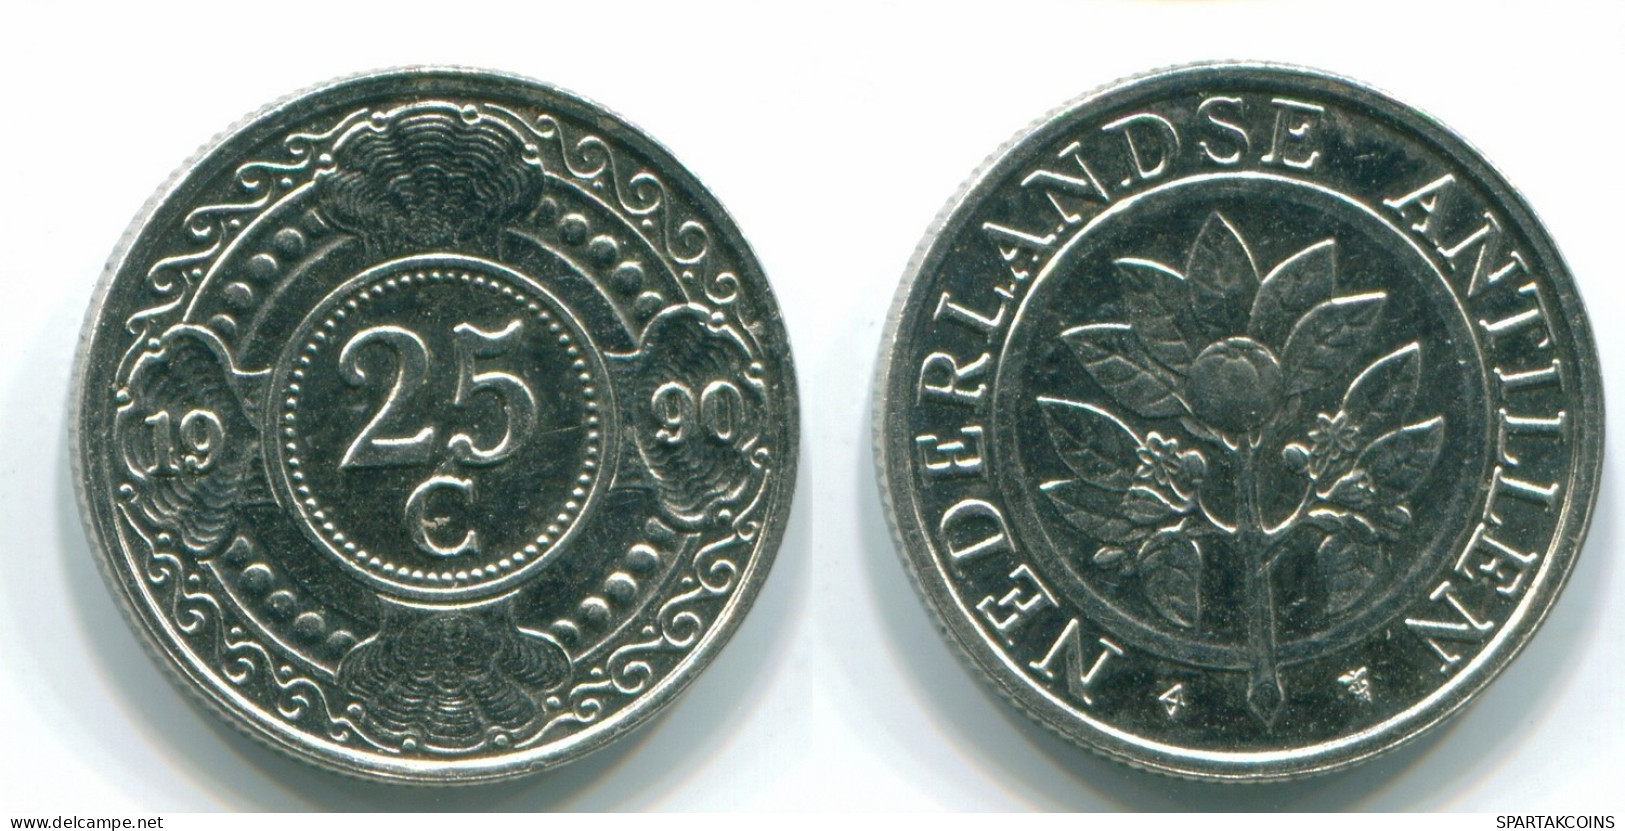 25 CENTS 1990 NIEDERLÄNDISCHE ANTILLEN Nickel Koloniale Münze #S11273.D.A - Antille Olandesi